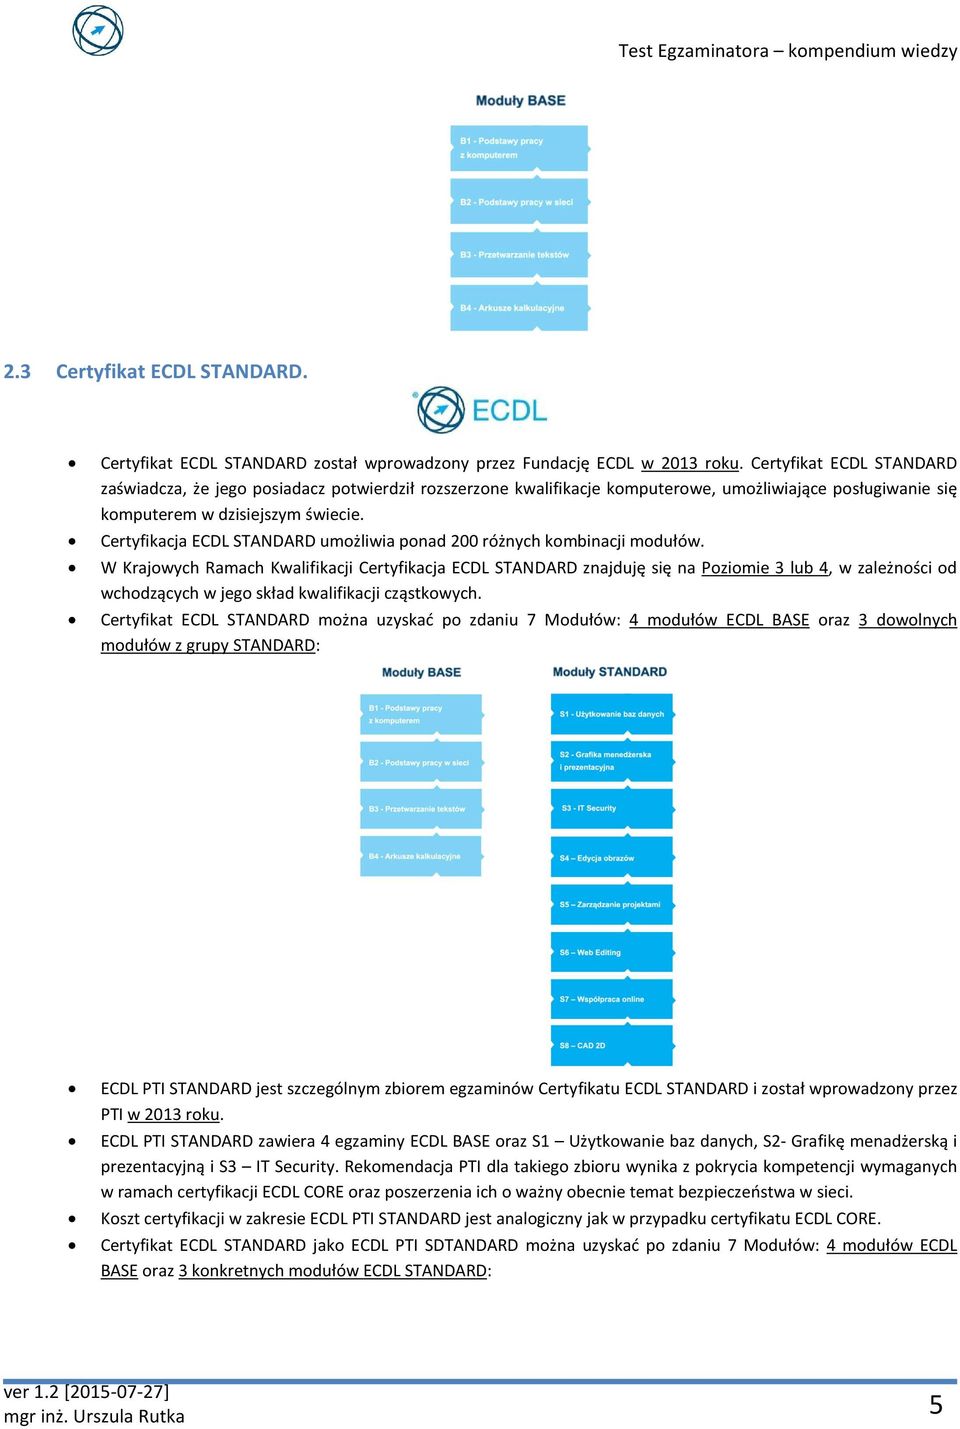 Certyfikacja ECDL STANDARD umożliwia ponad 200 różnych kombinacji modułów.